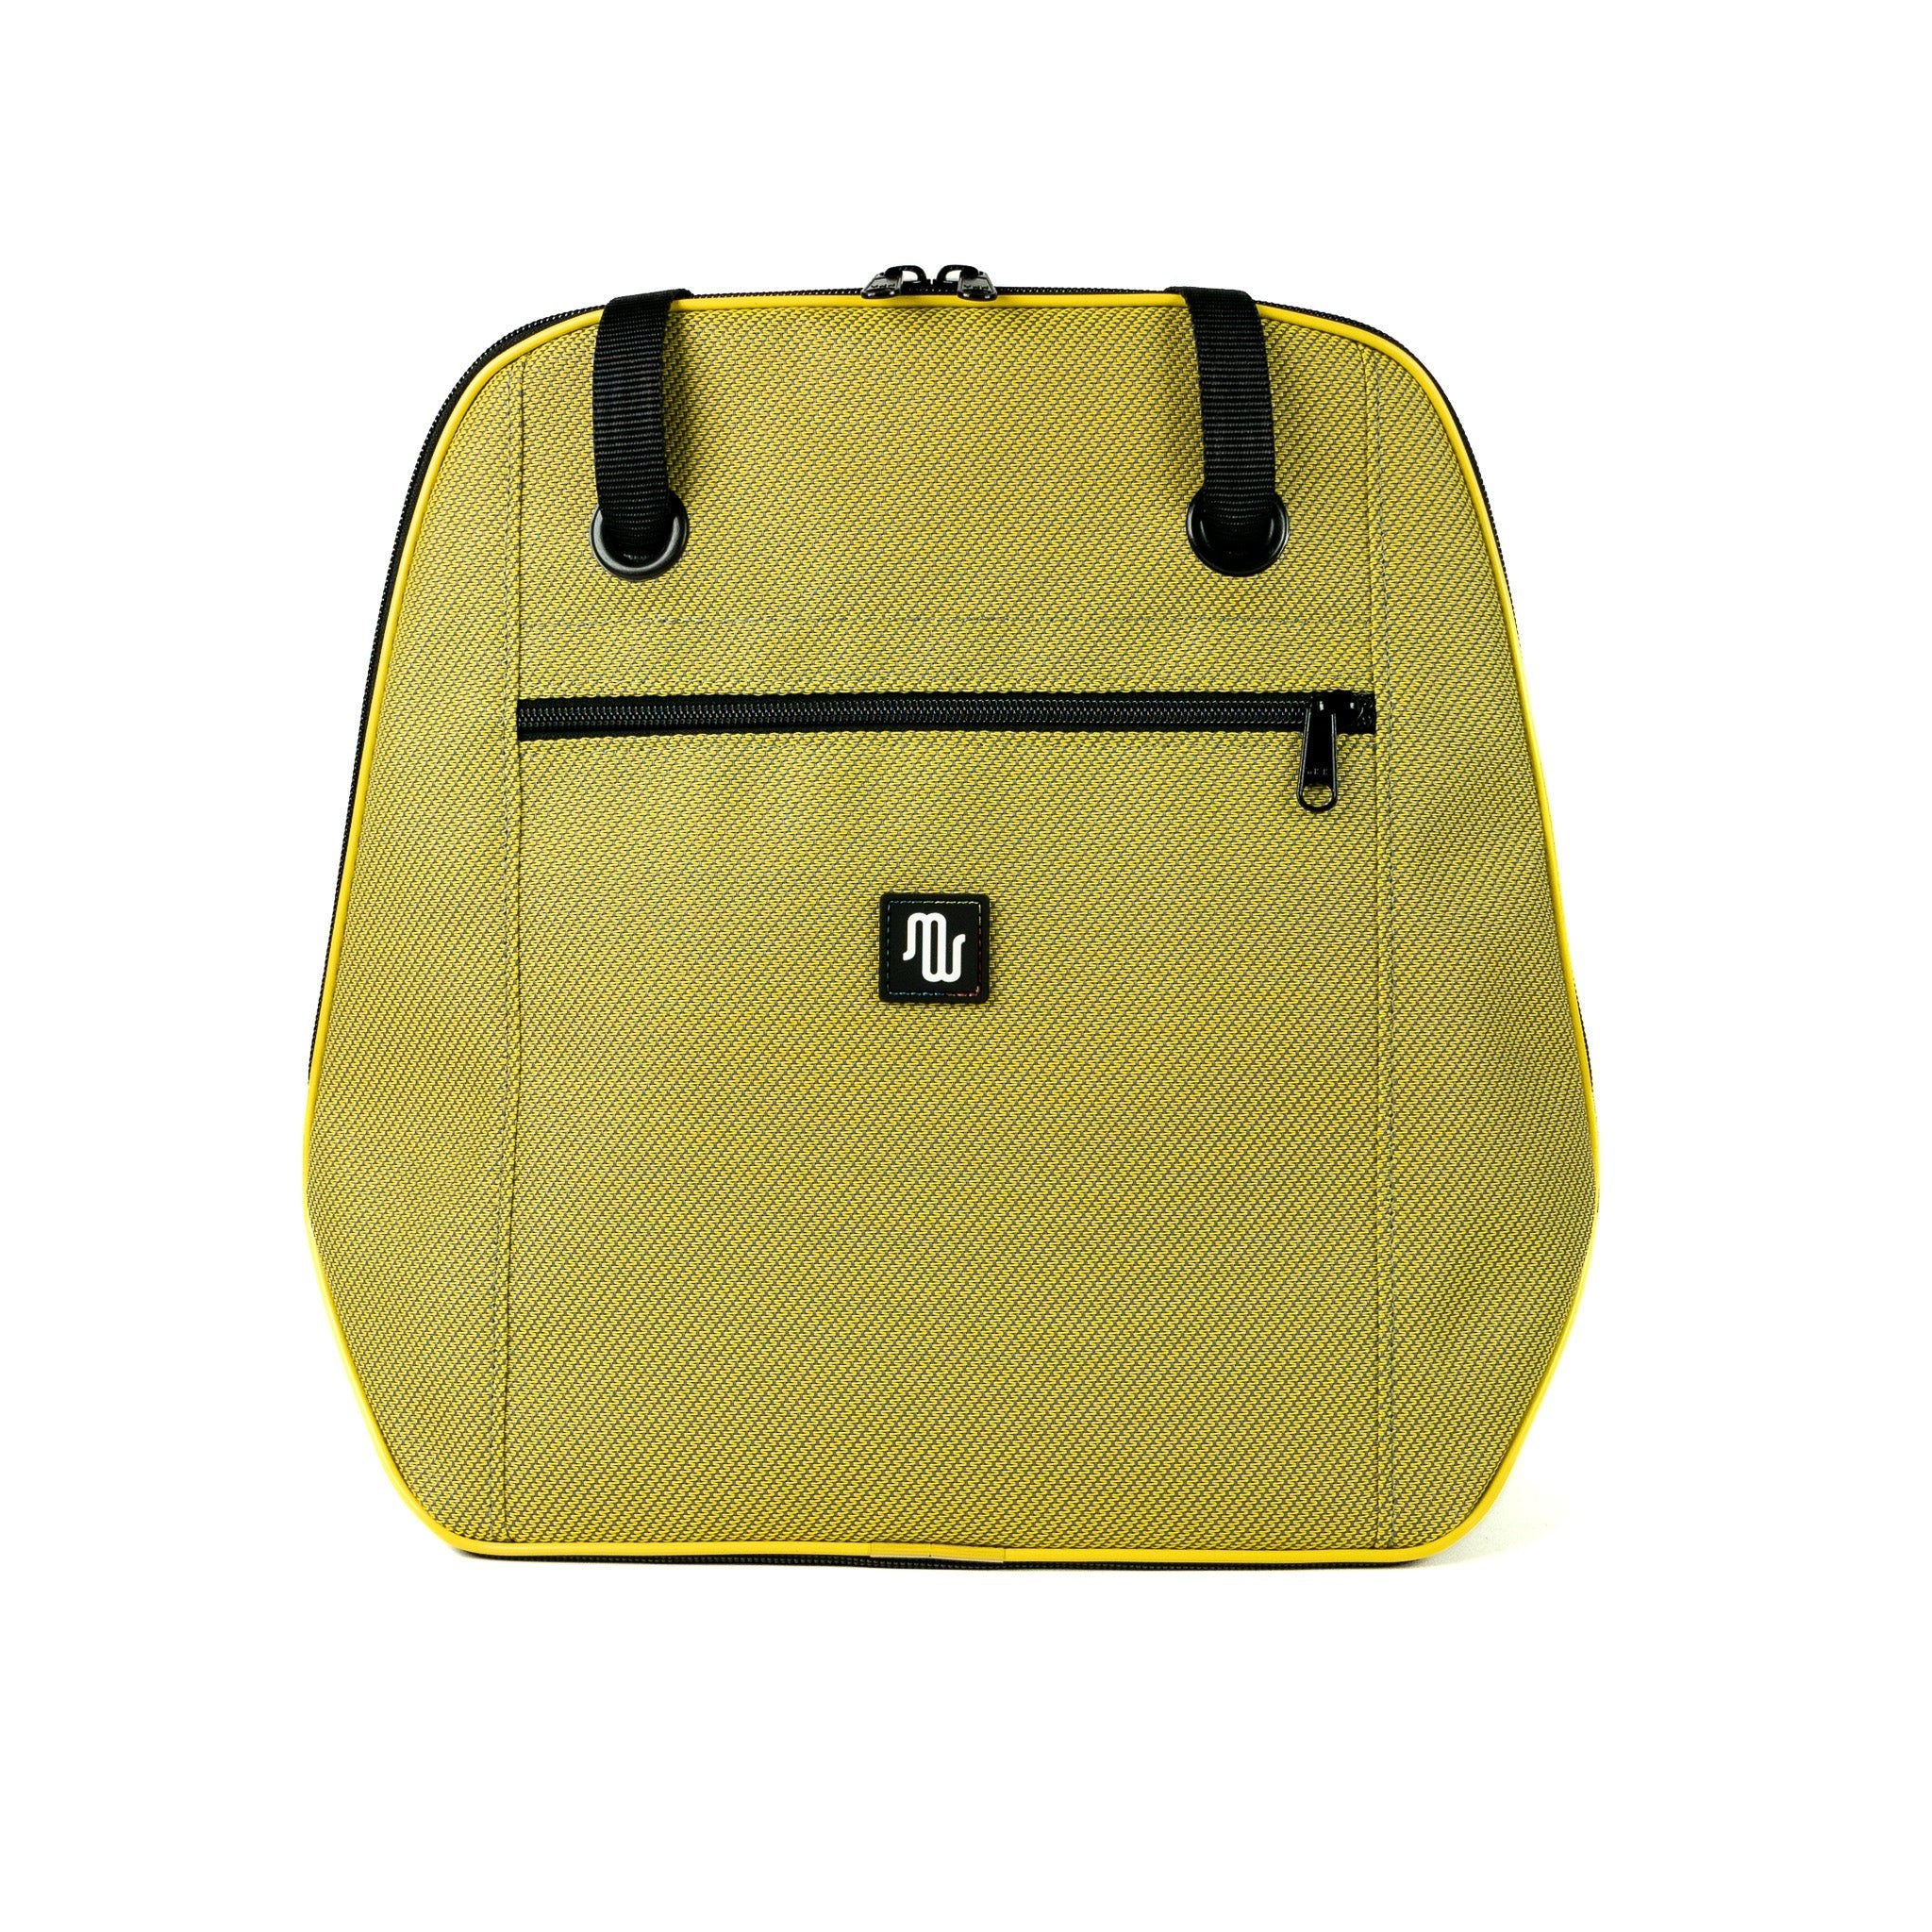 Shoulder Bag - NANA No. 061 - Shoulder bag - medencebag